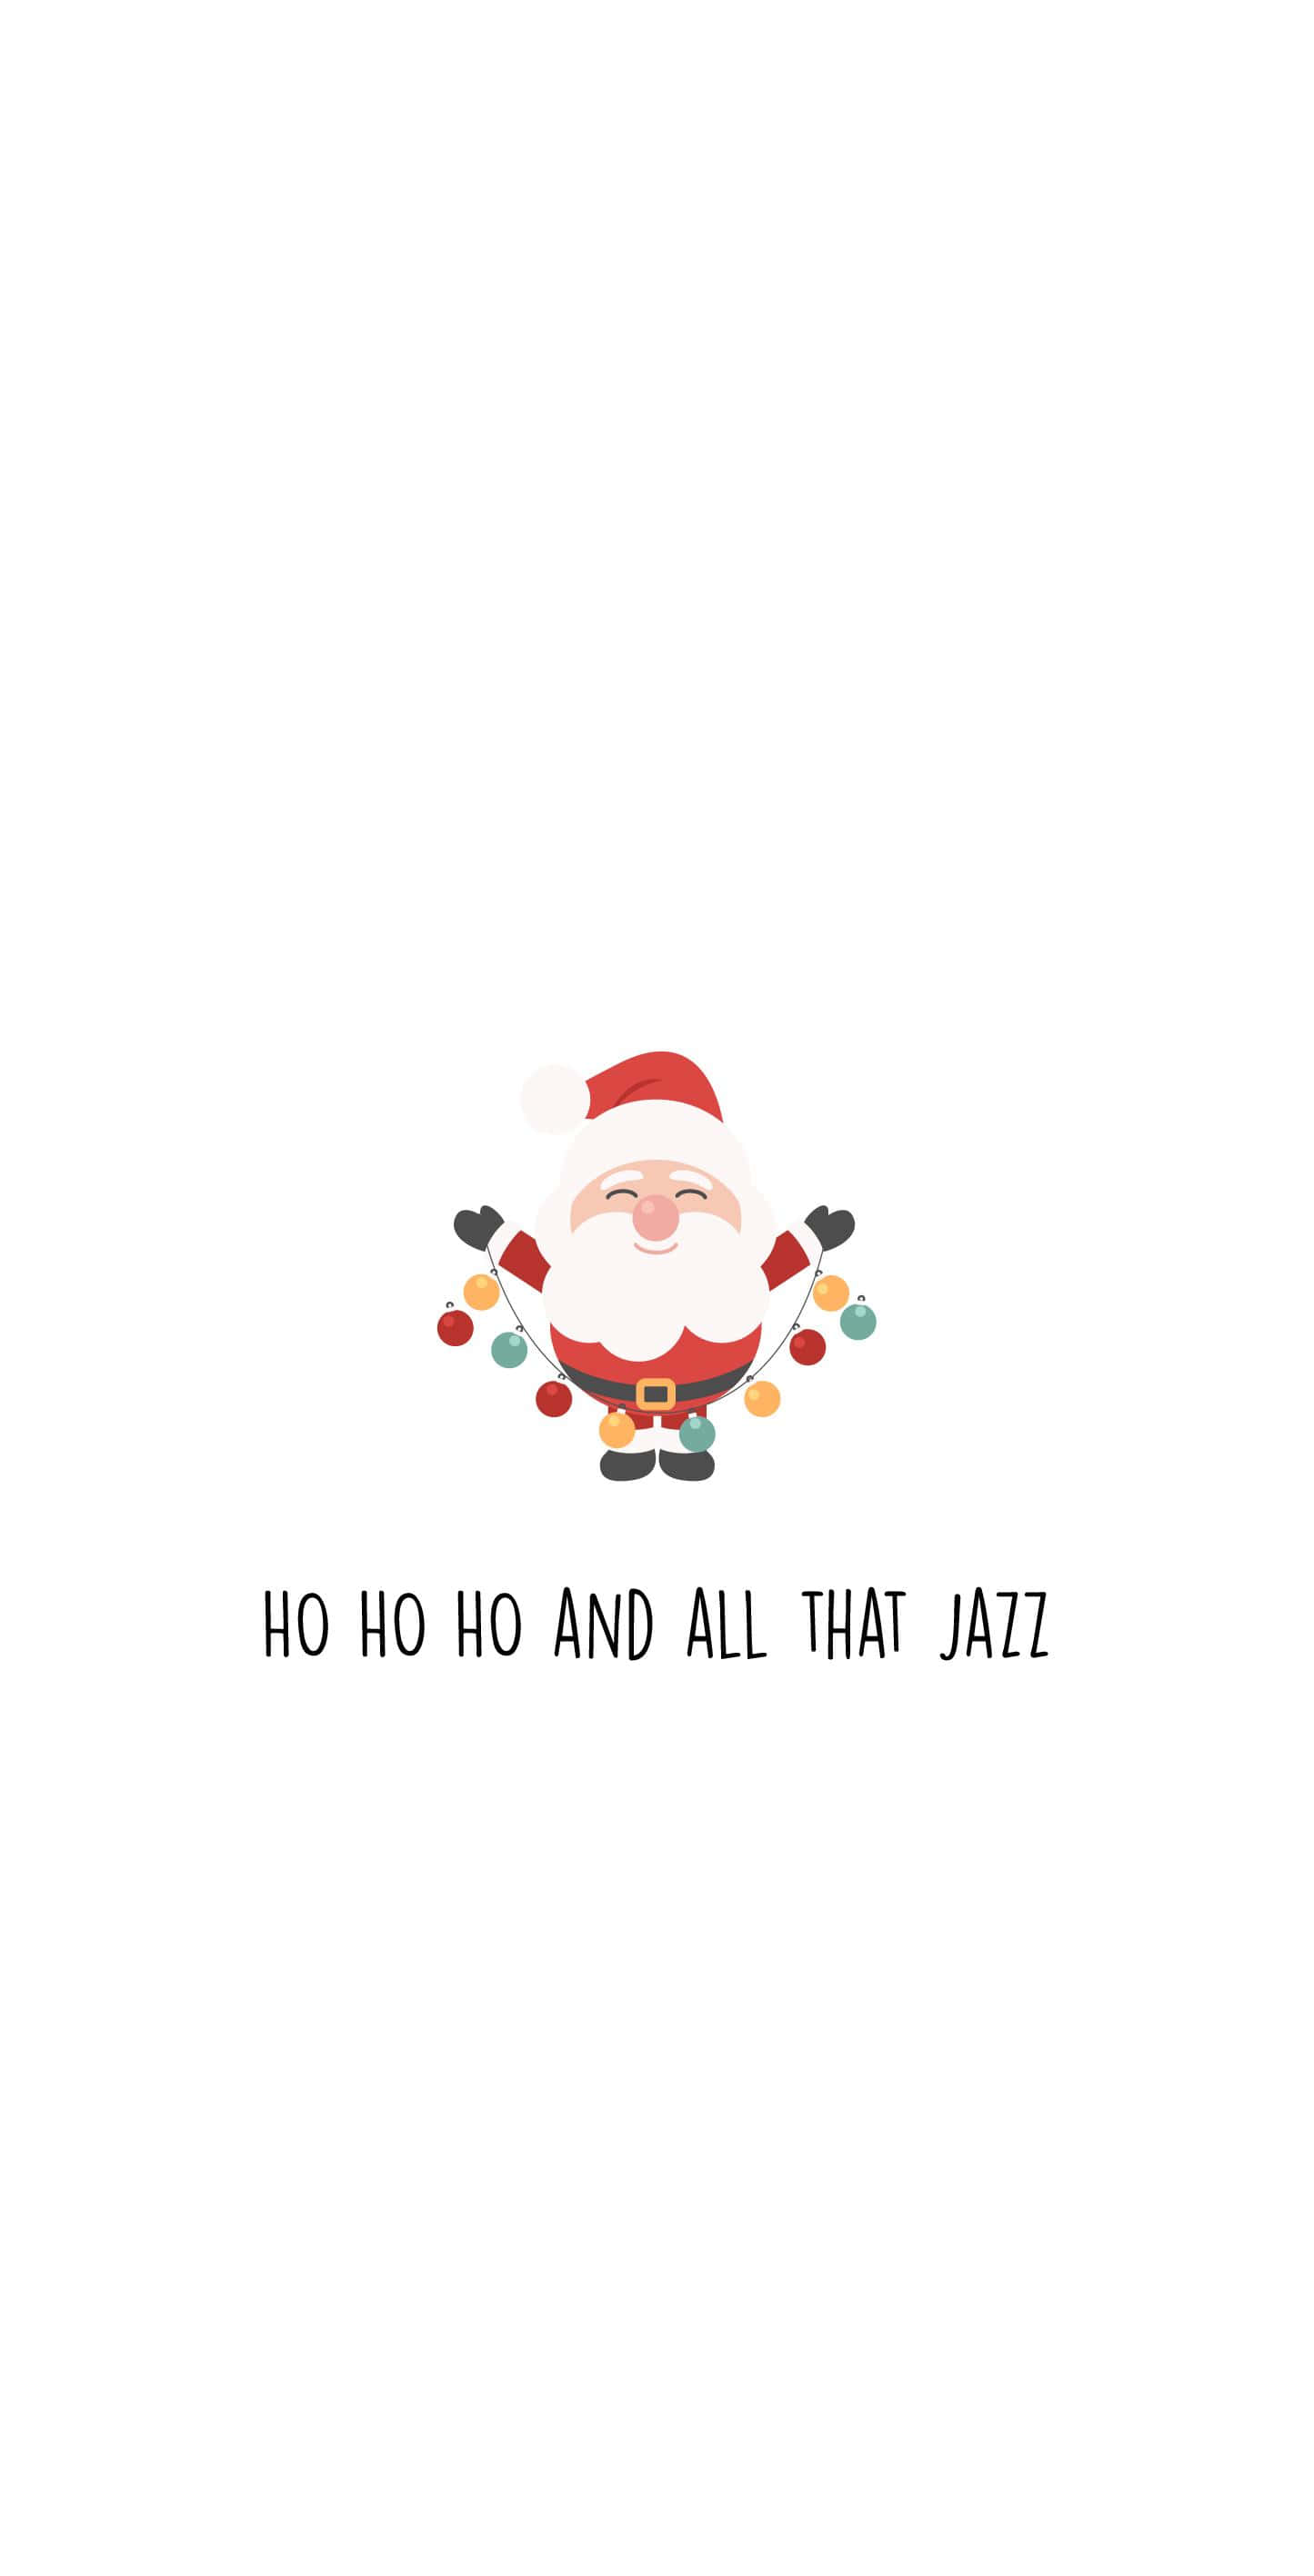 Julemandenog Det Hele Jazz.